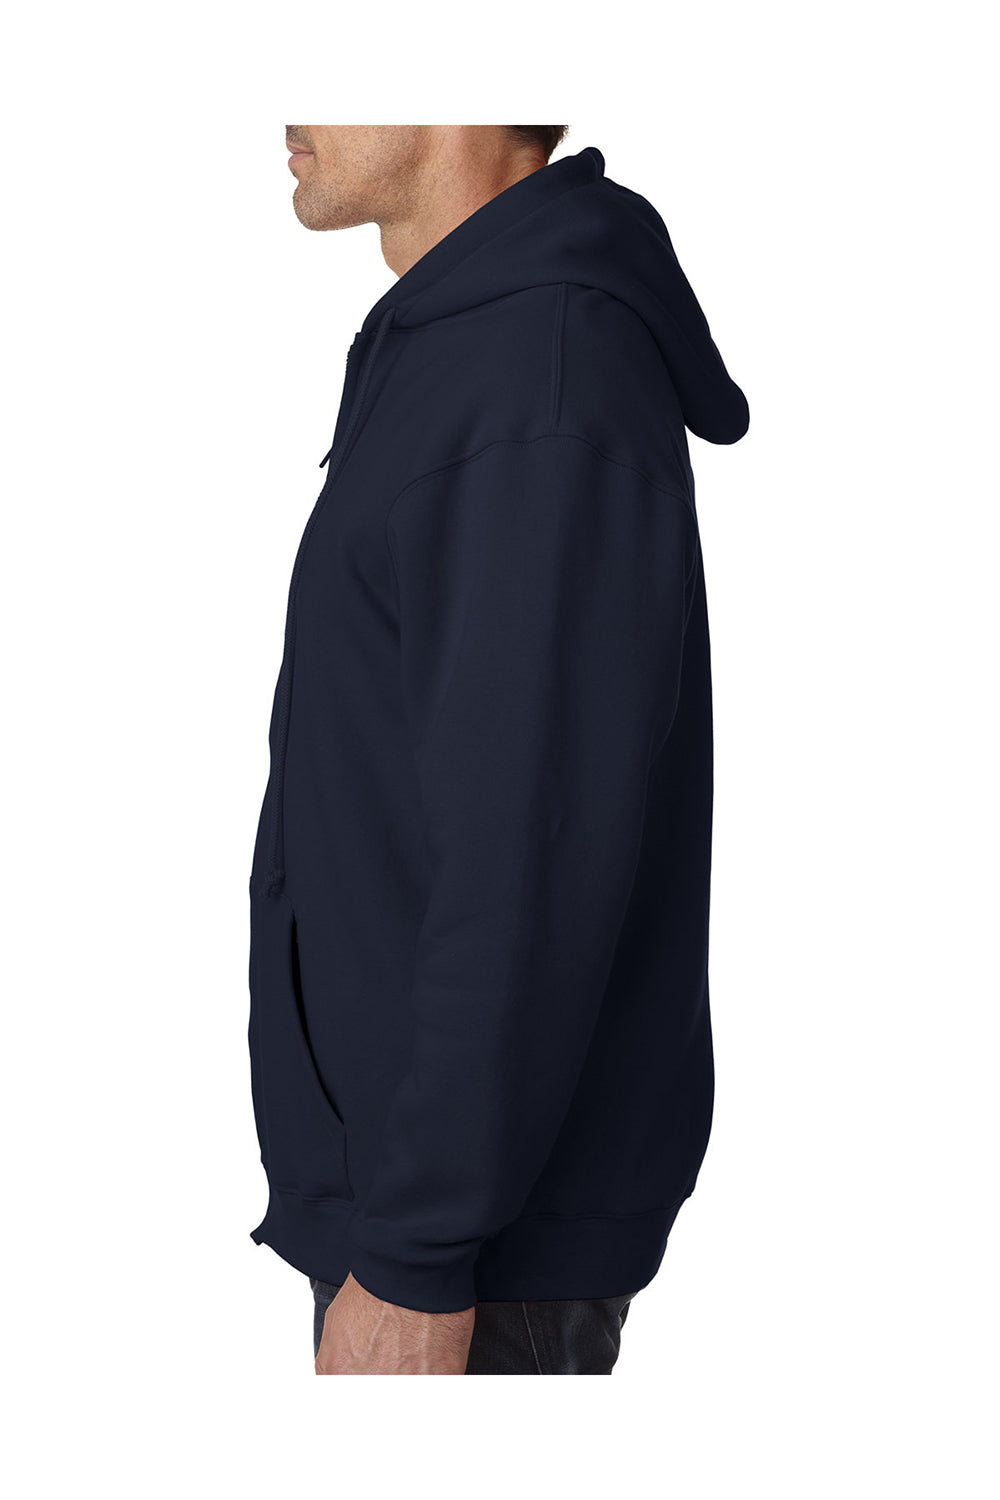 Bayside BA940 Mens Thermal Lined Full Zip Hooded Sweatshirt Hoodie Navy Blue/Cream Model Side